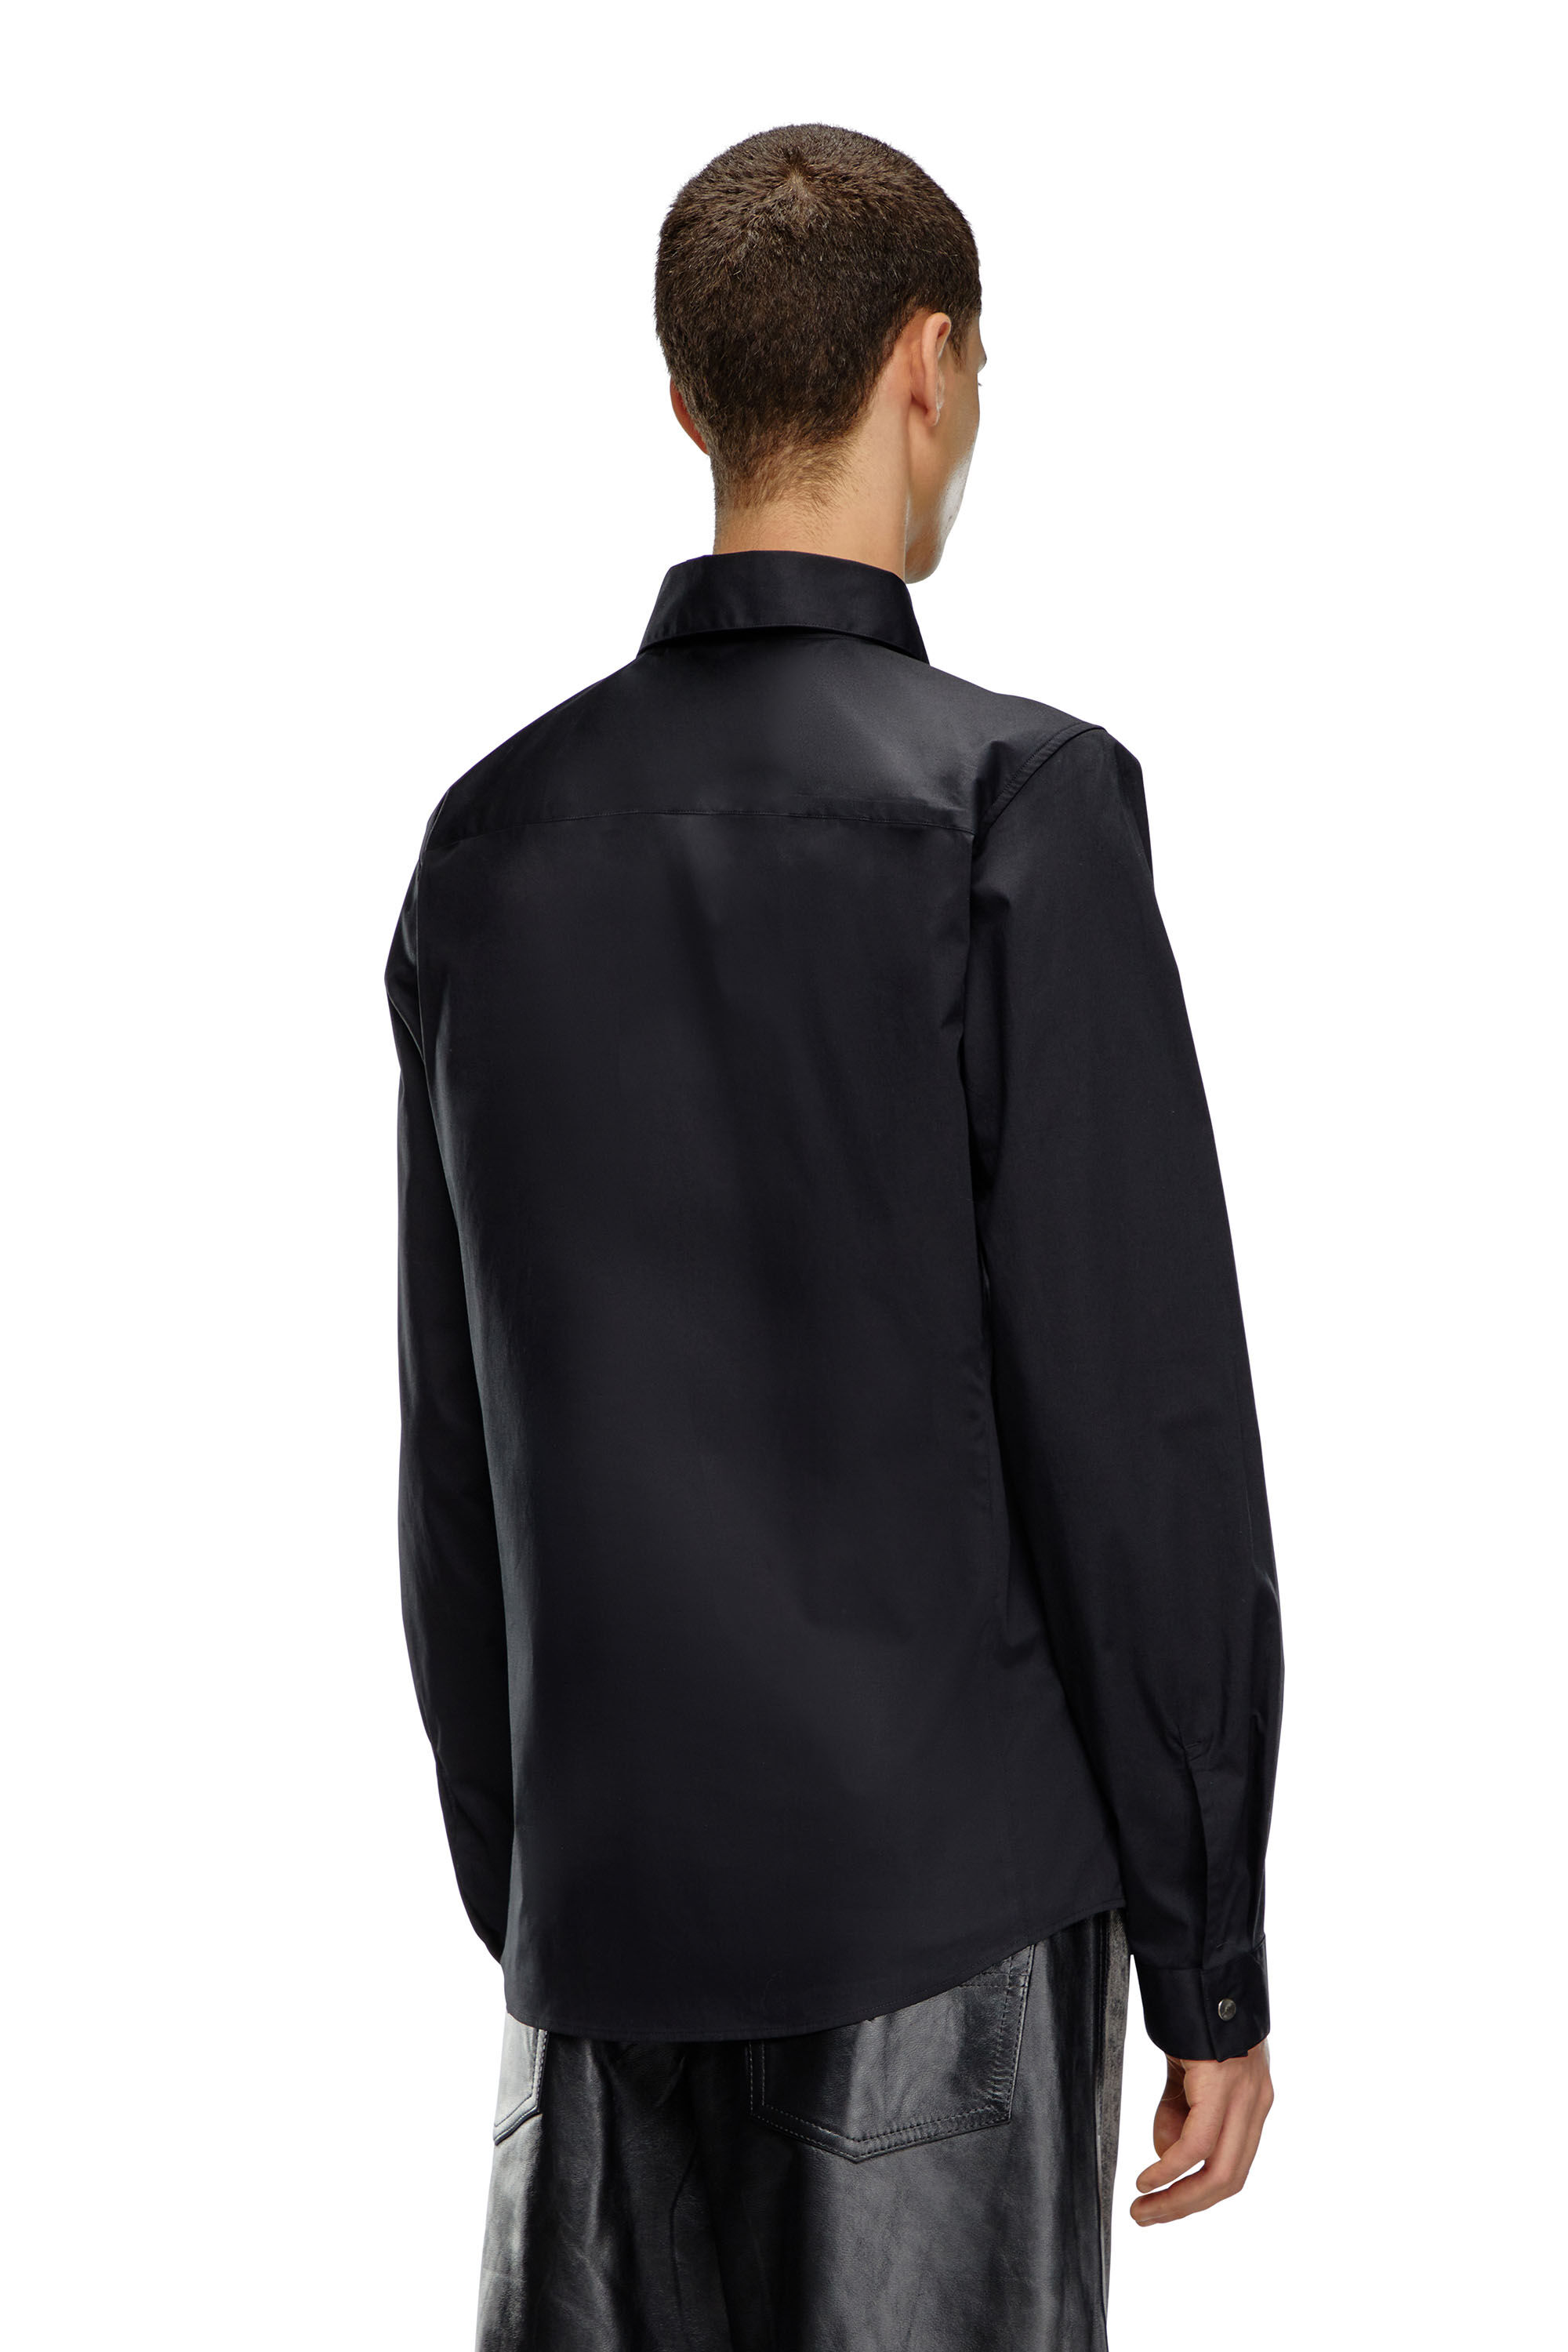 Diesel - S-FITTY-A, Homme Chemise élégante avec col à logo brodé in Noir - Image 4